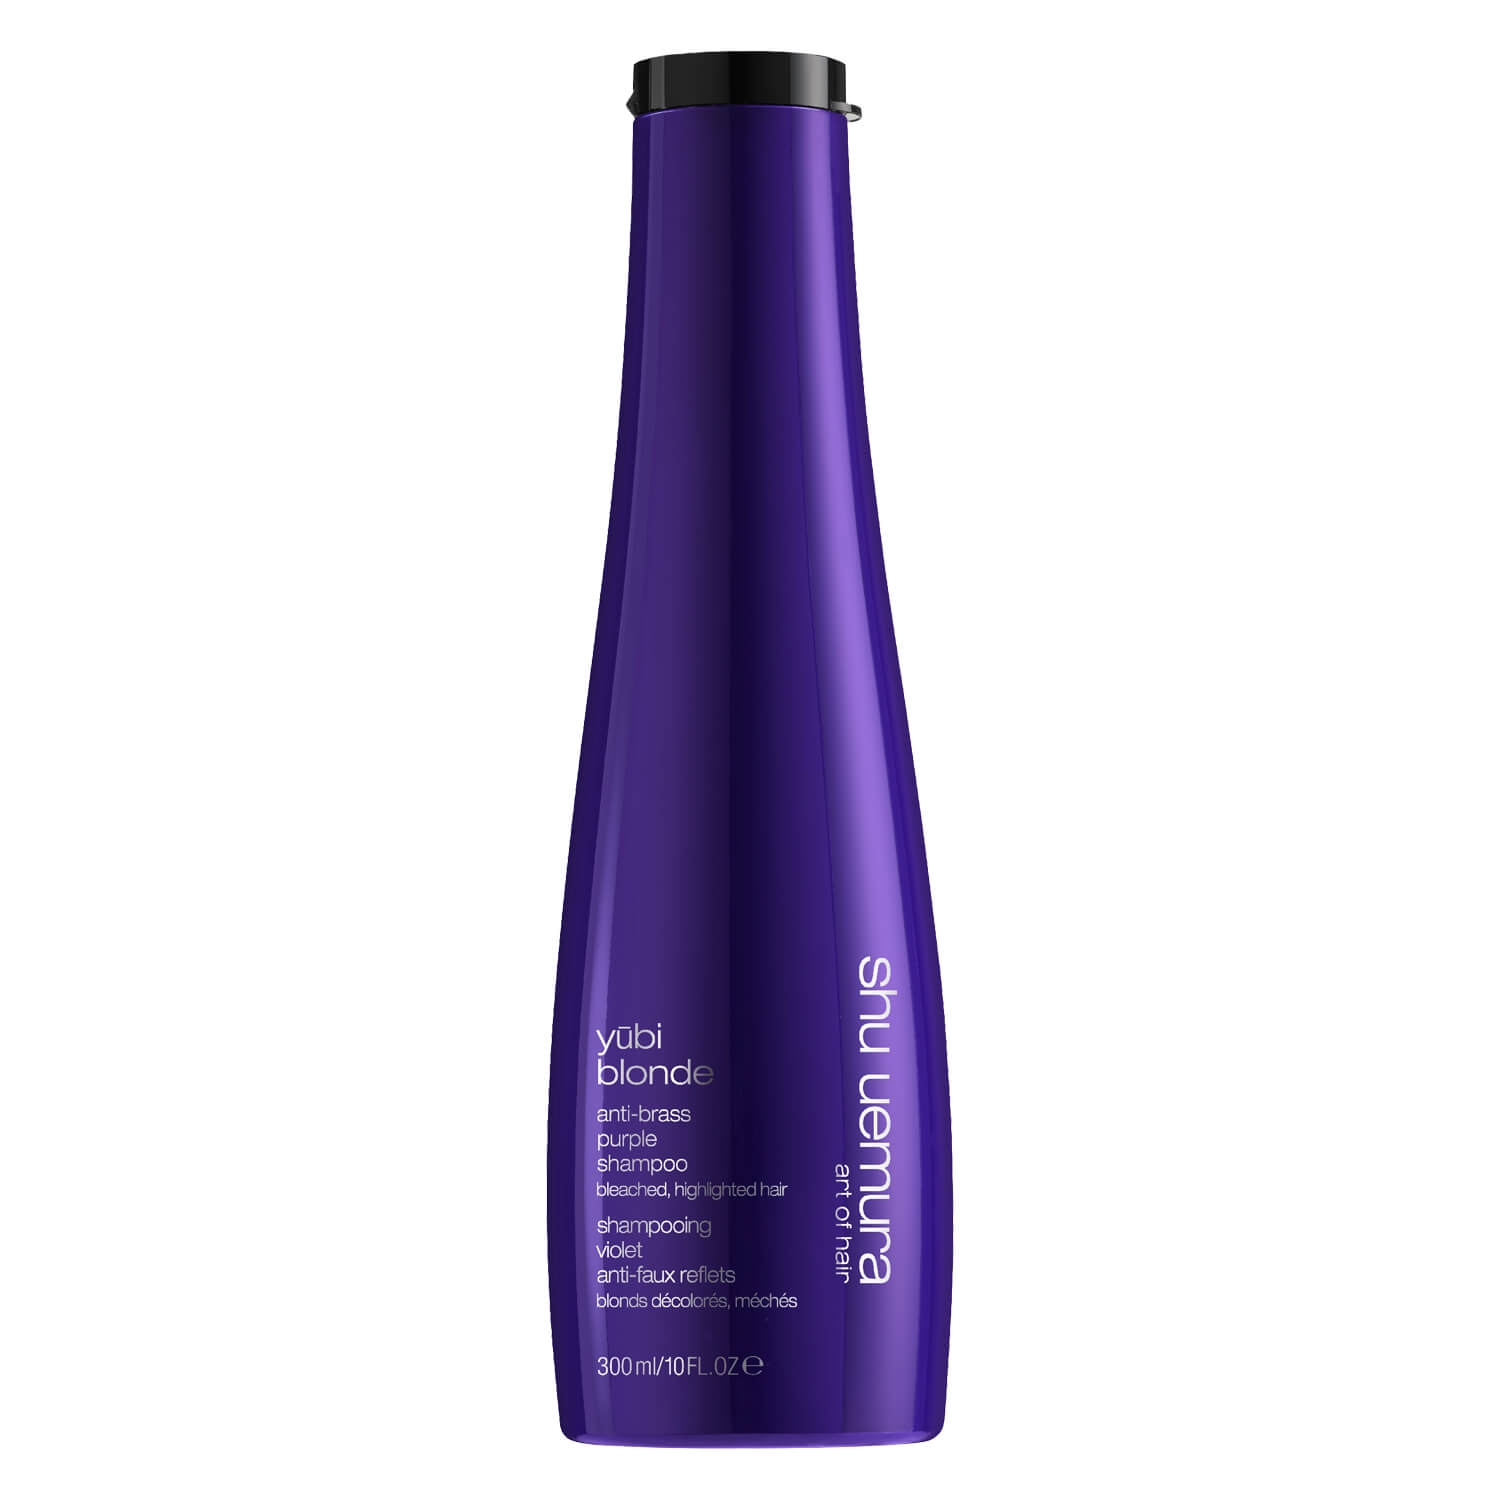 Produktbild von Yubi Blonde - Anti-Brass Purple Shampoo